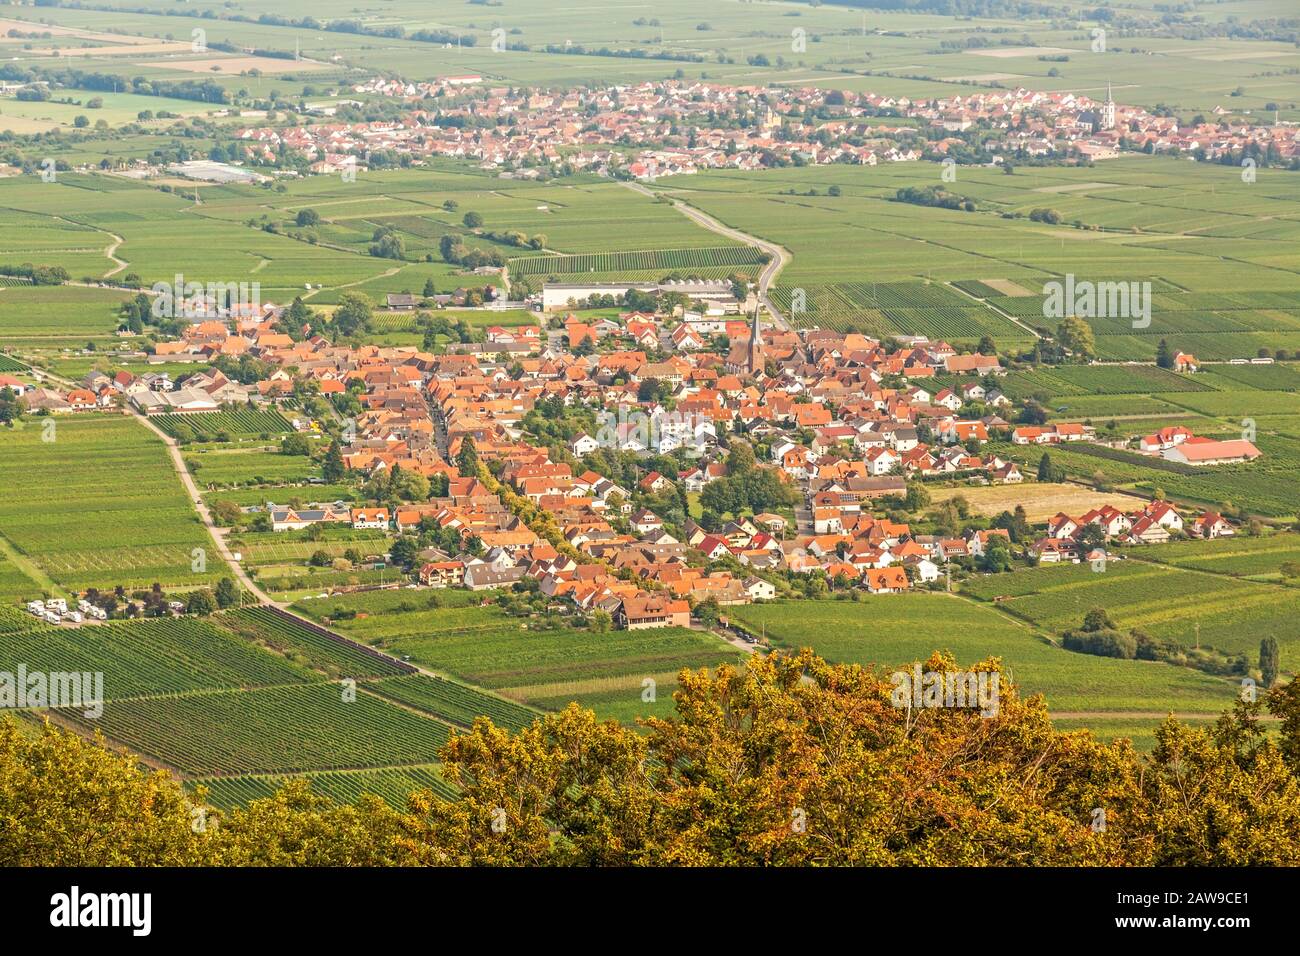 Region Suedliche Weinstrasse (southern wine route) - village named Rhodt unter Rietburg - aerial view from Rietburg ruin Stock Photo